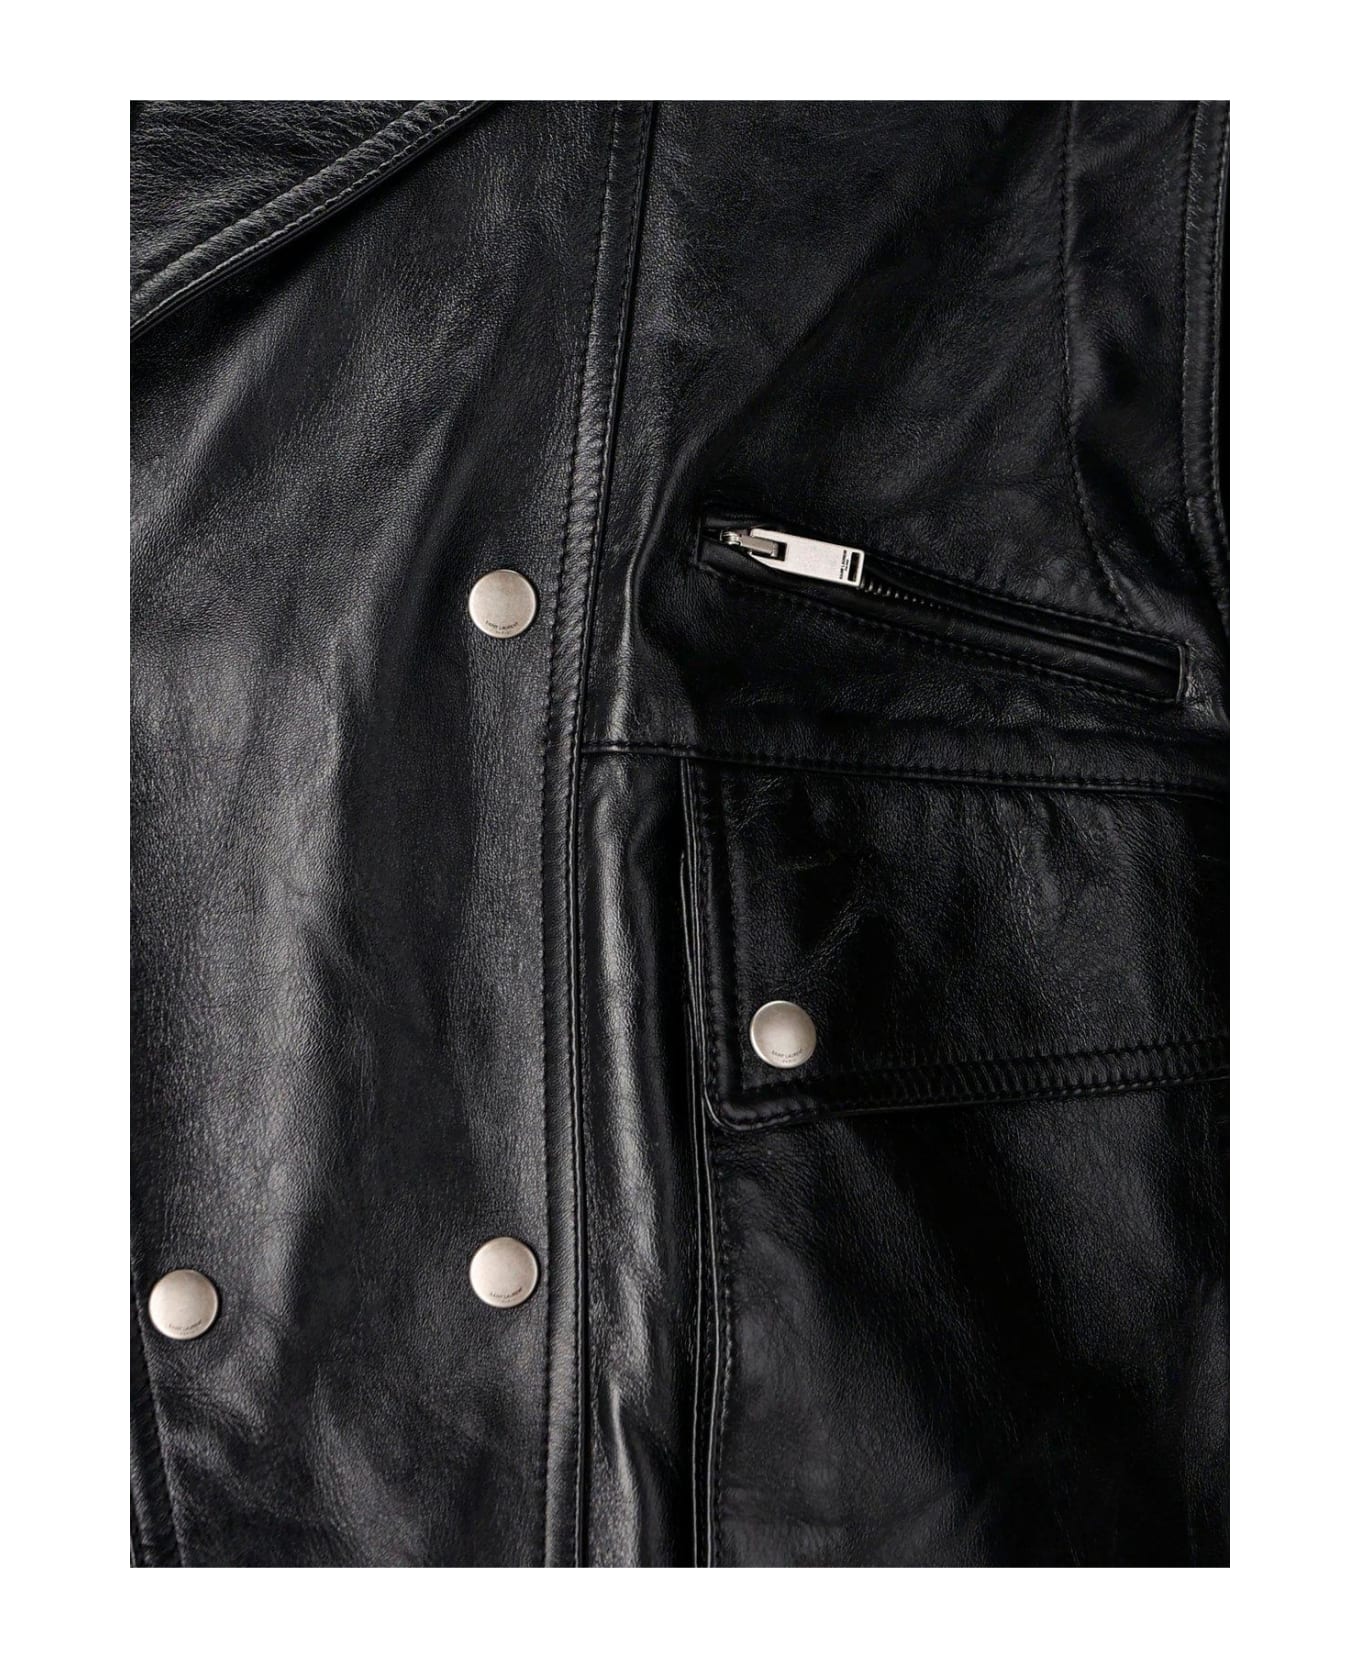 Saint Laurent Crinkled-effect Biker Leather Jacket